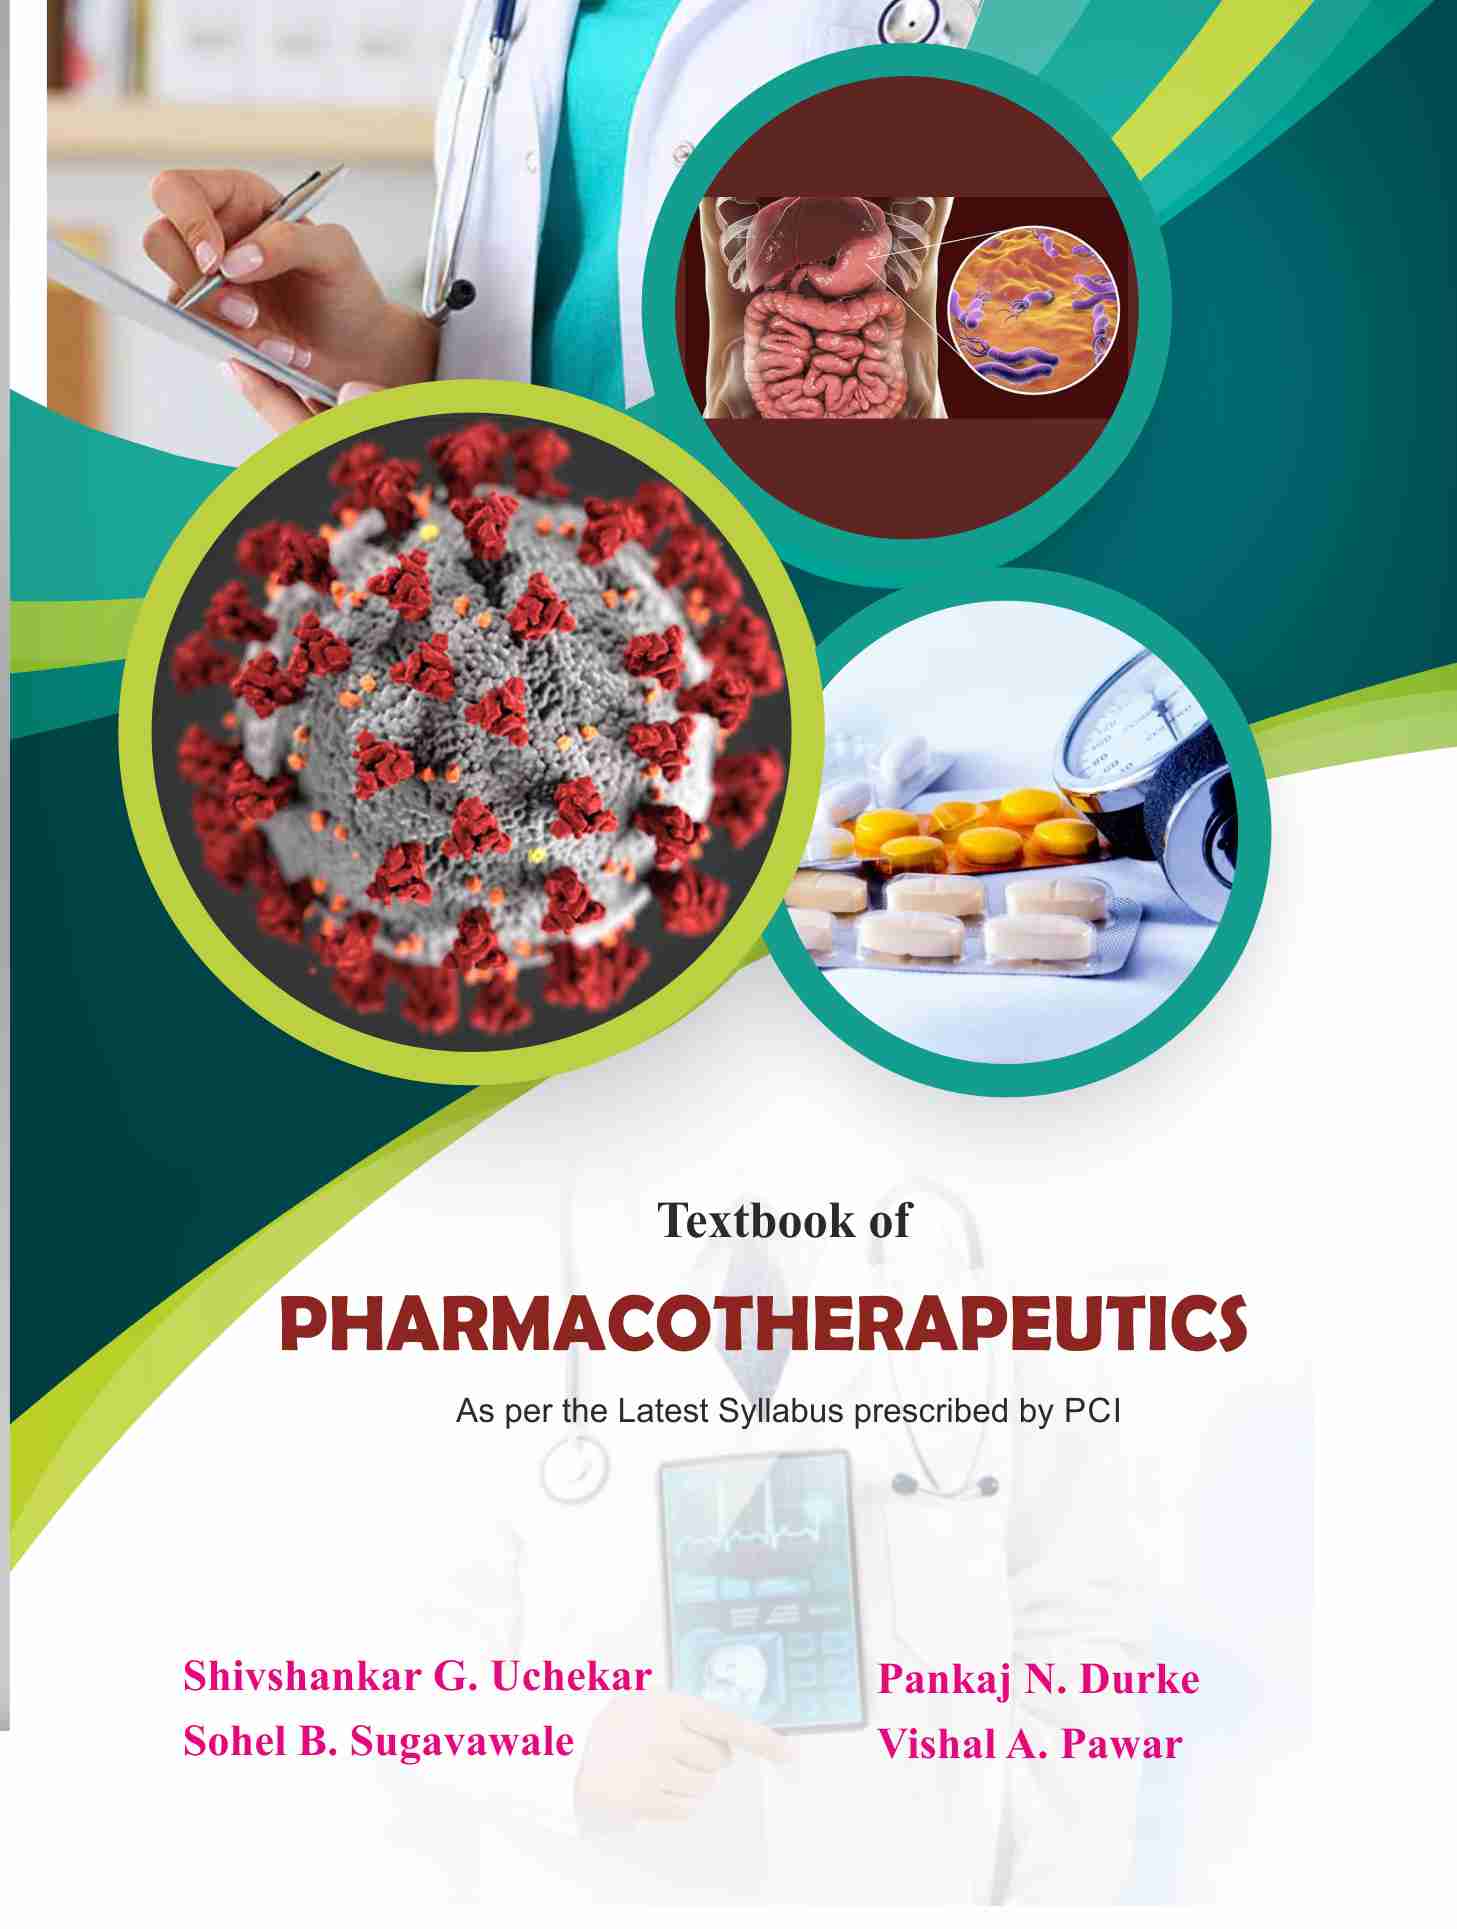 Textbook of Pharmacotherapeutics